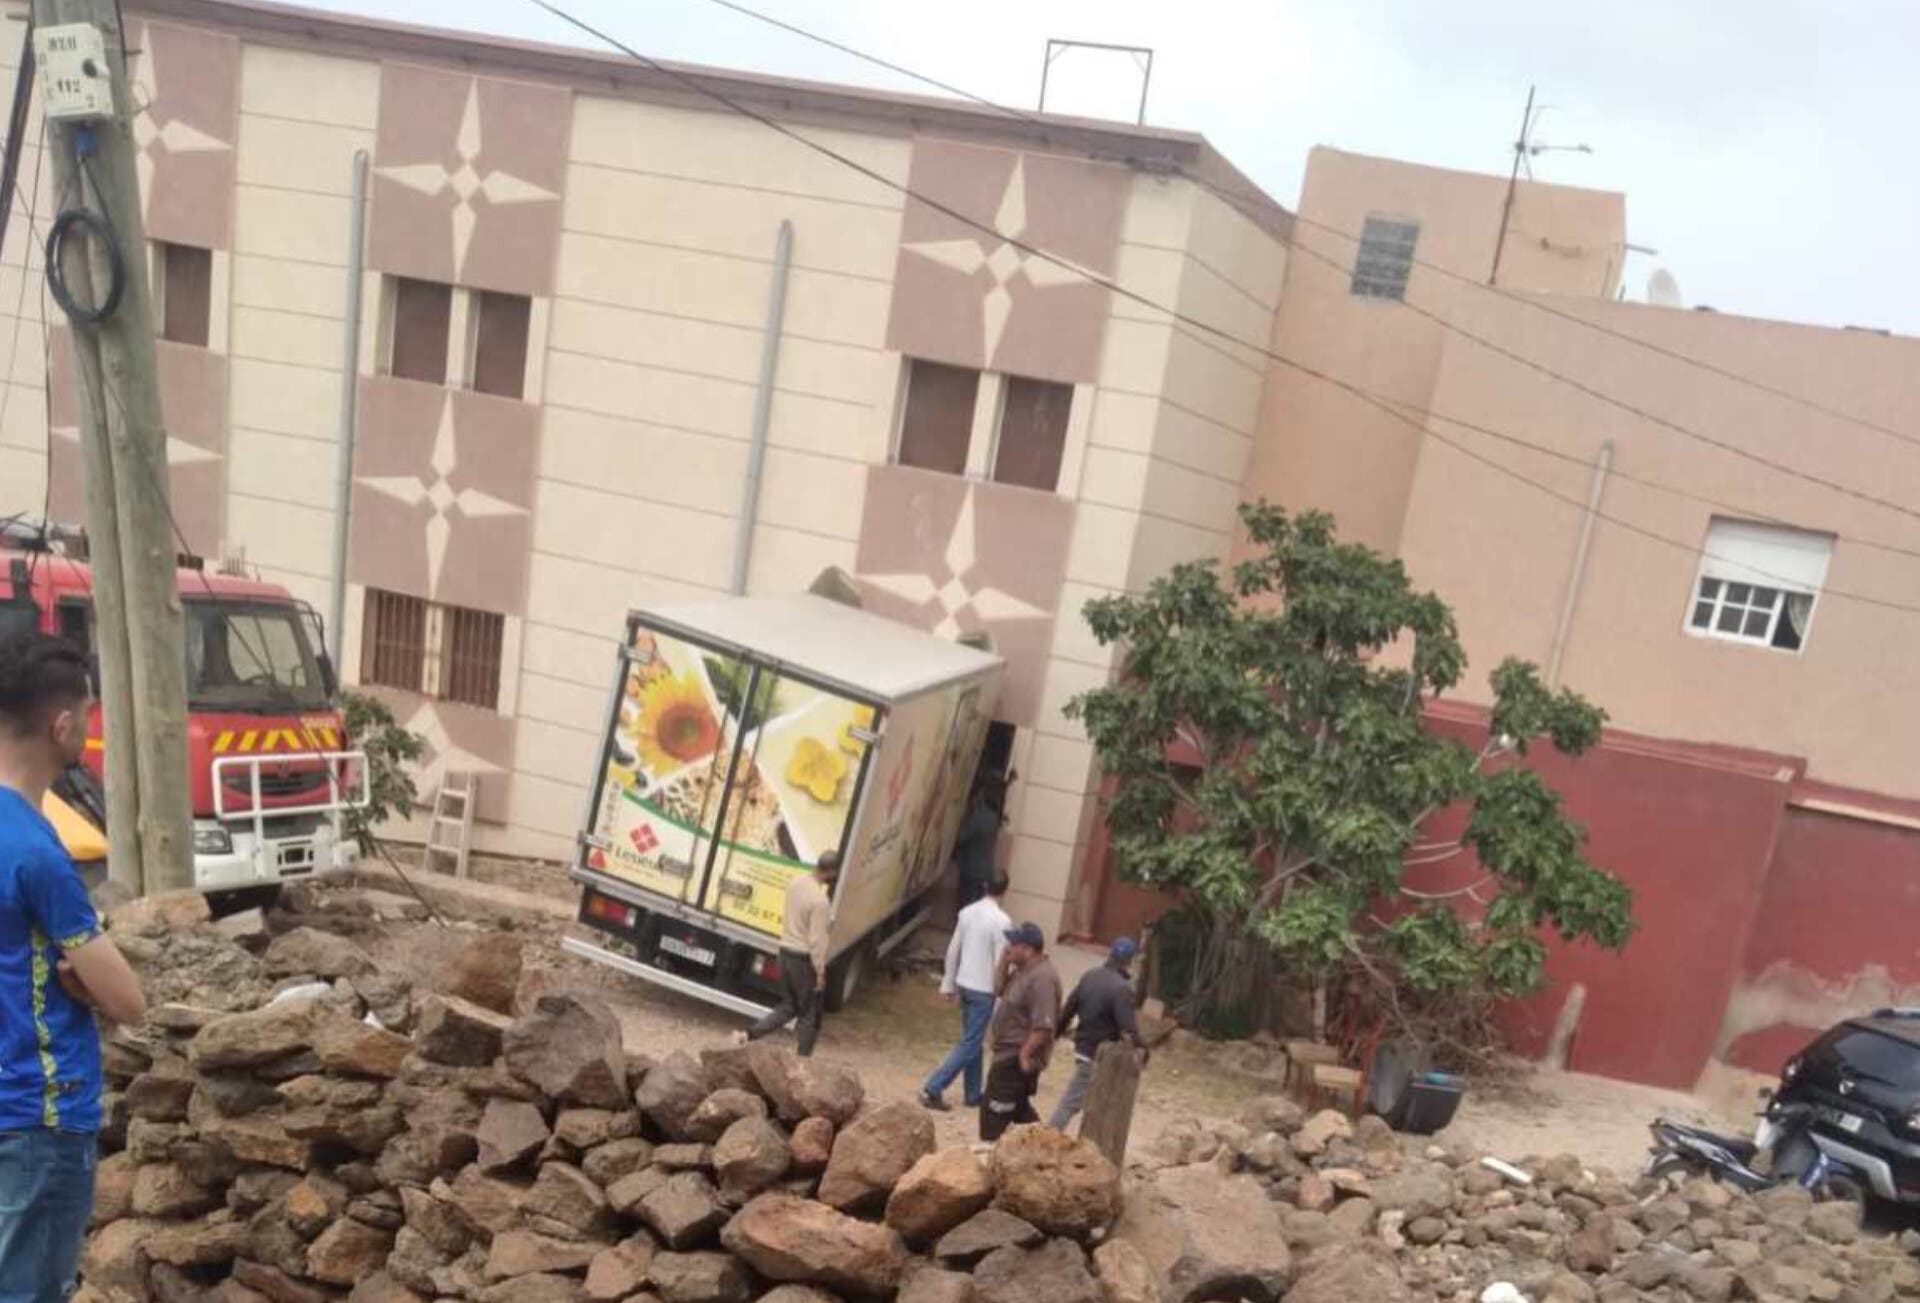 Une personne blessée a été transportée à l'hôpital de Bani Ansar après qu'un camion est entré en collision avec un bâtiment